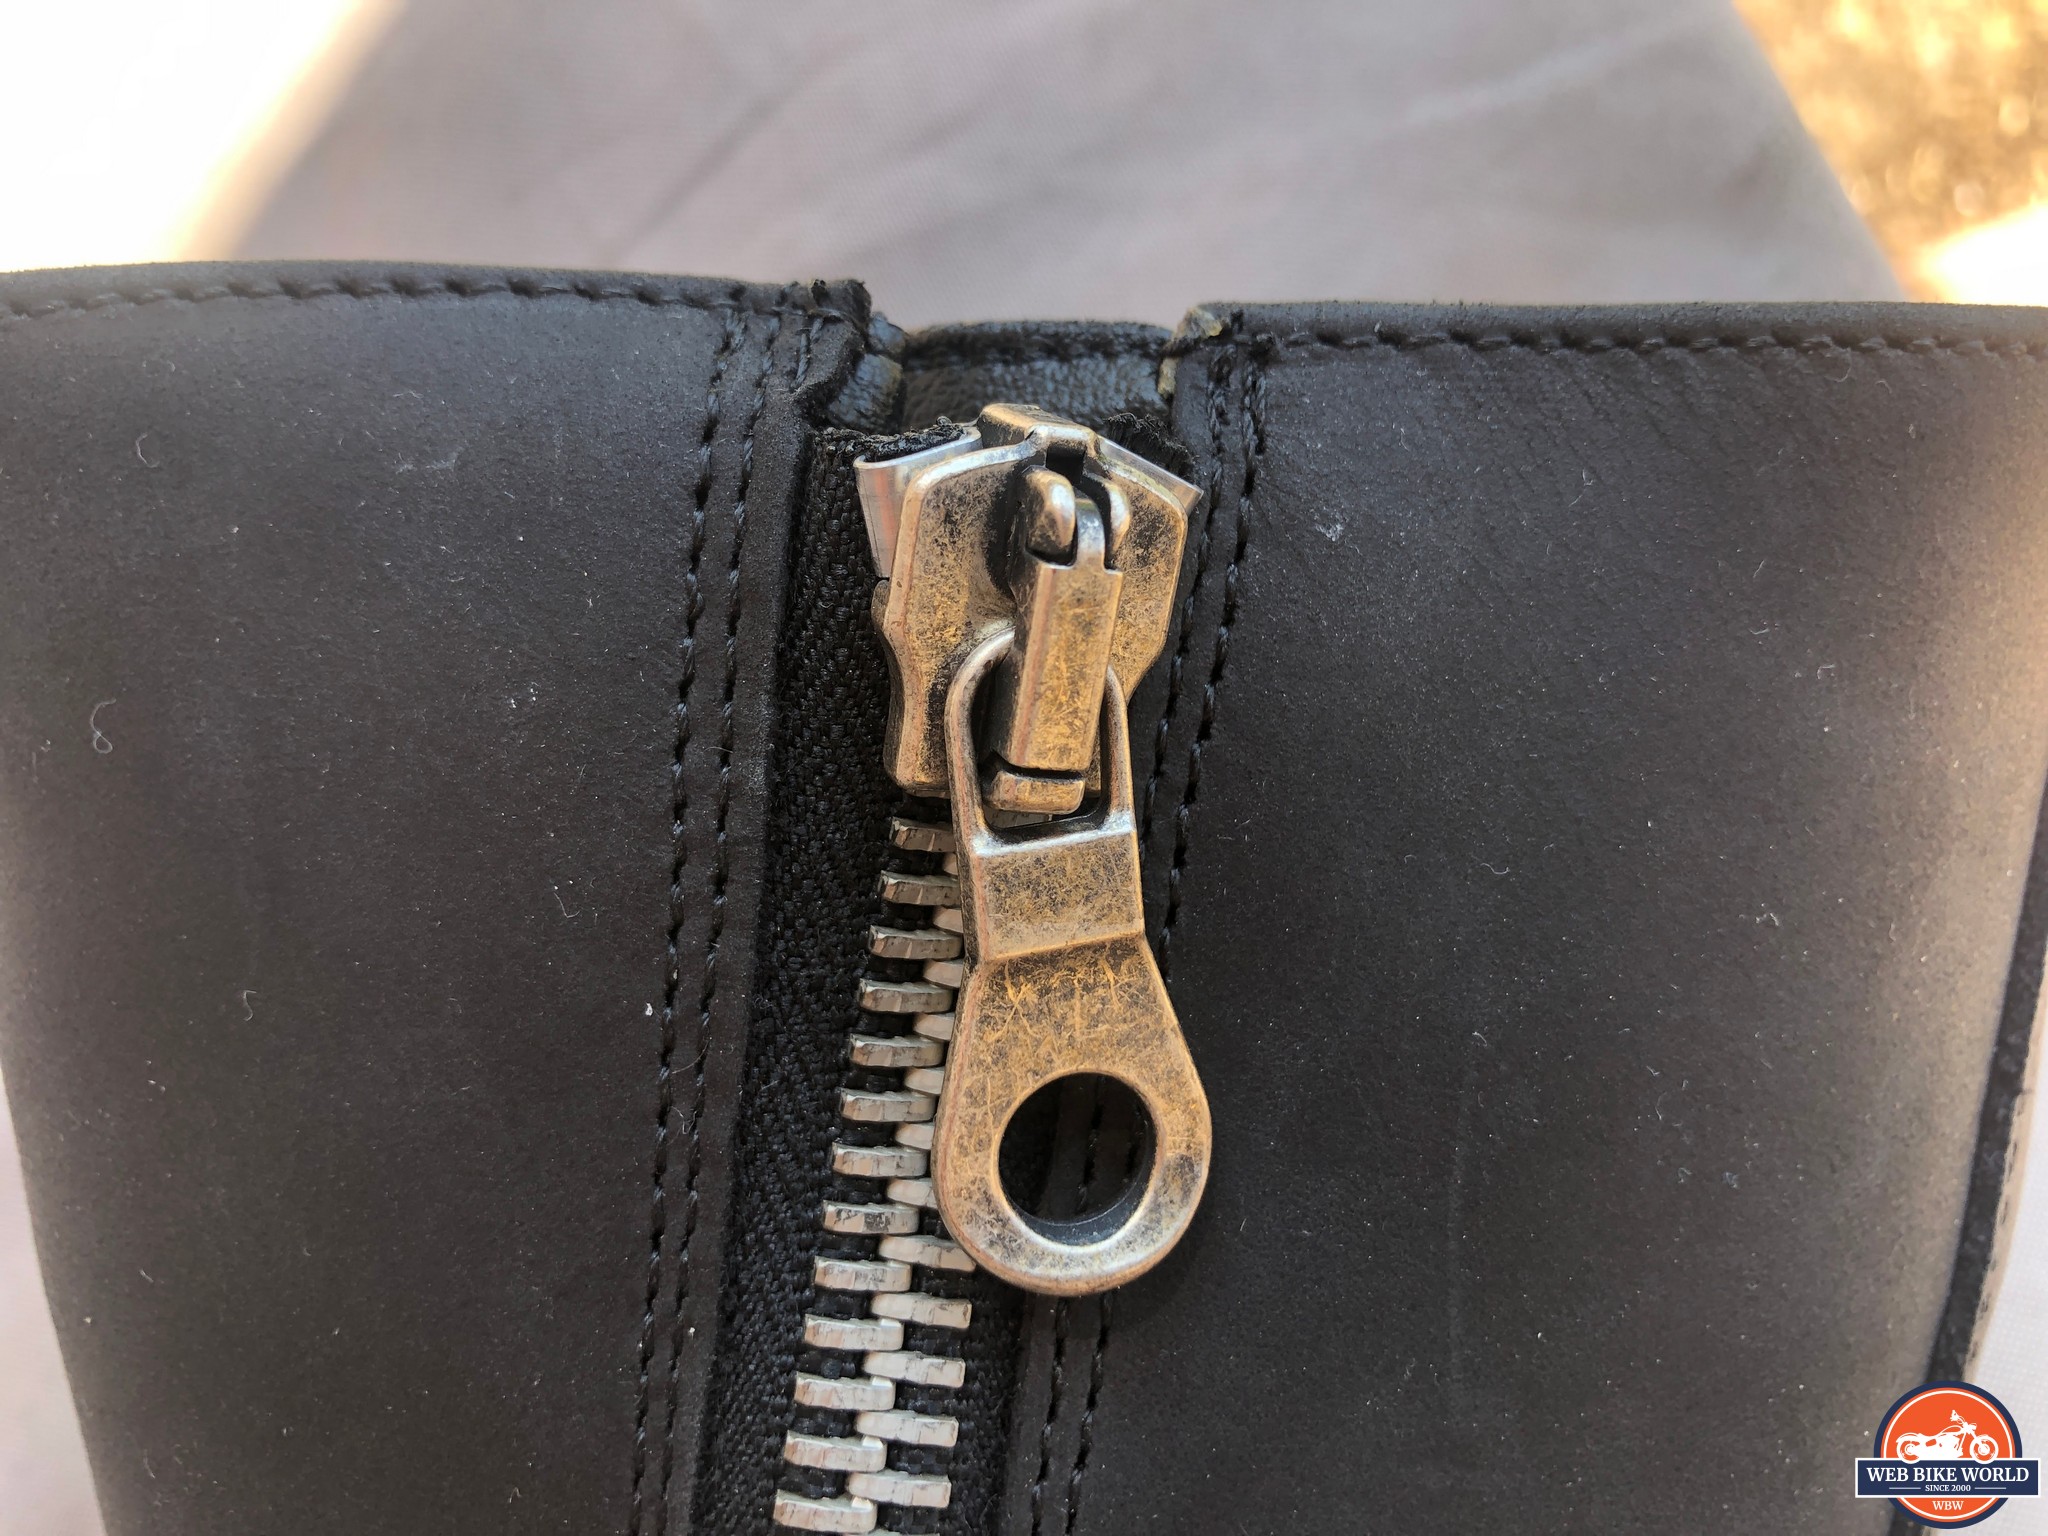 Closeup of the zipper